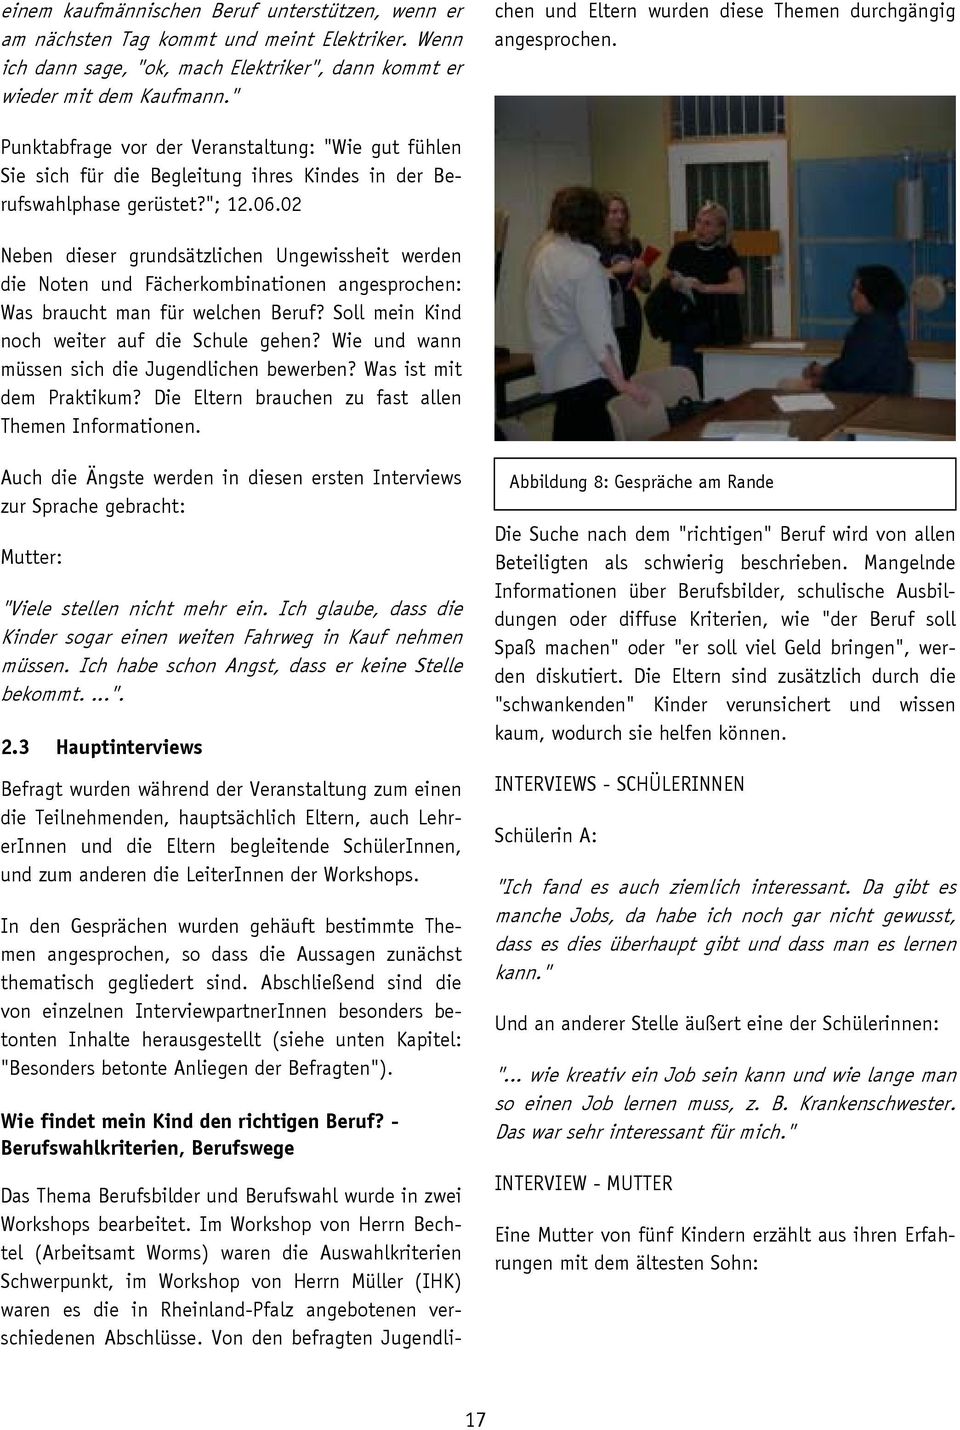 Im Workshop von Herrn Bechtel (Arbeitsamt Worms) waren die Auswahlkriterien Schwerpunkt, im Workshop von Herrn Müller (IHK) waren es die in Rheinland-Pfalz angebotenen verschiedenen Abschlüsse.